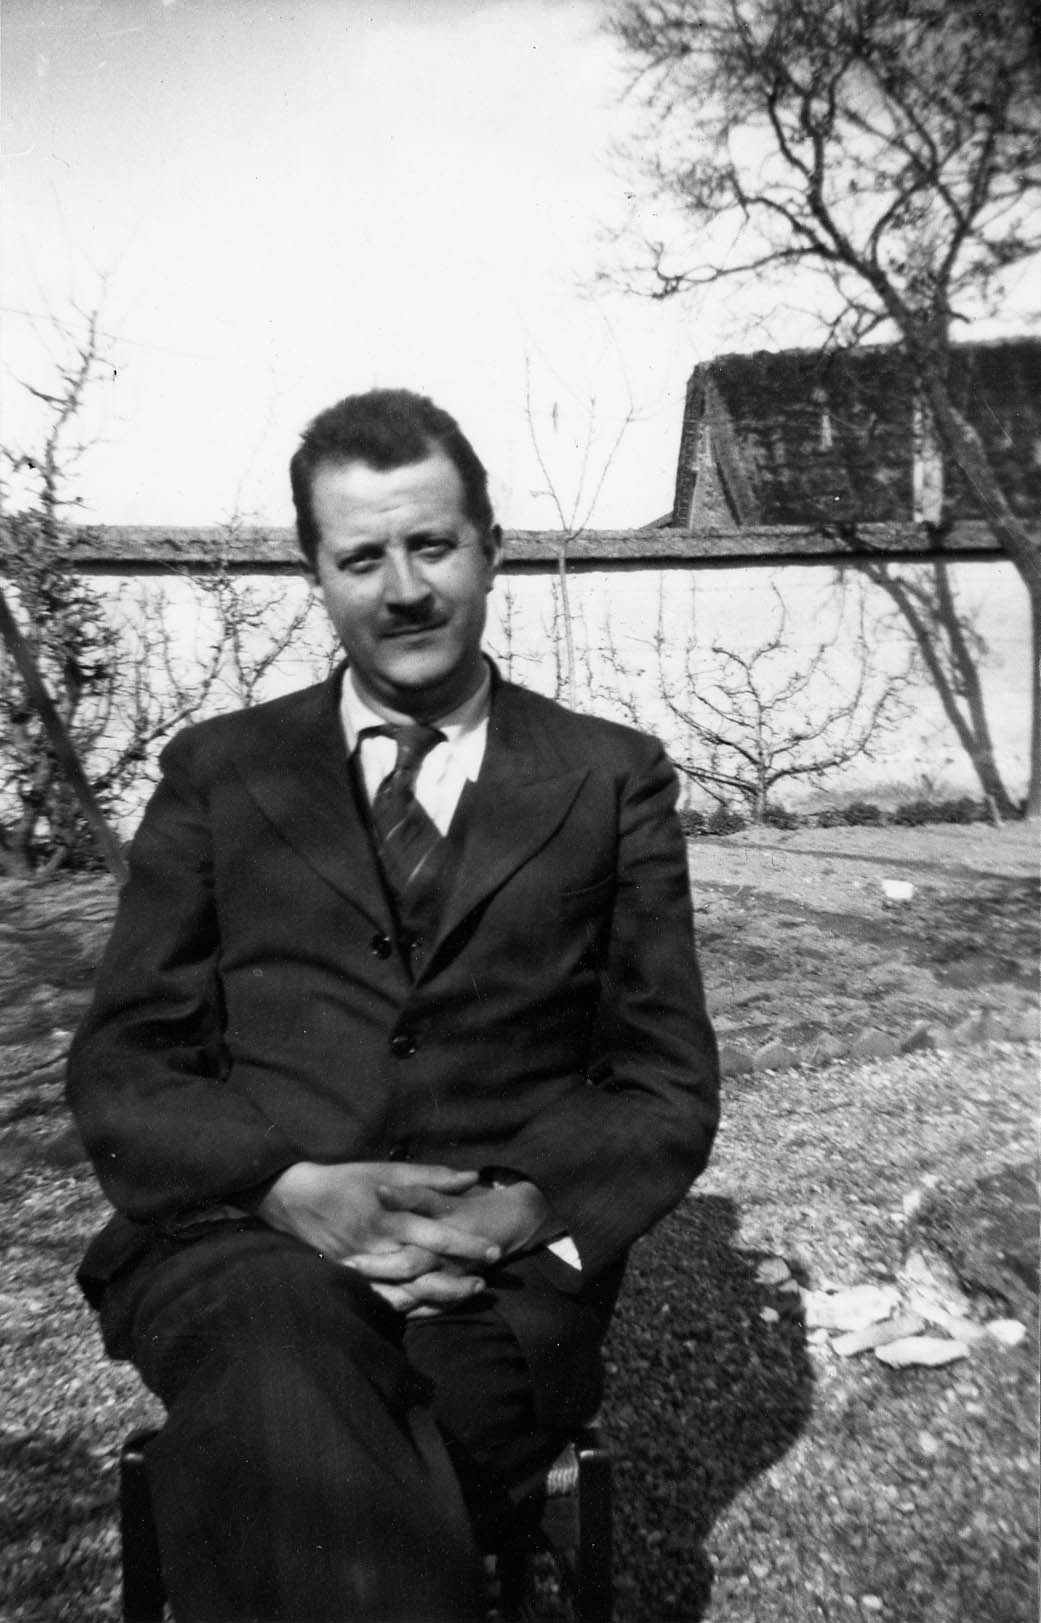 Bernard Laffaille à Maintenon. Cl. anonyme. Nd [vers 1945] © Fonds Bernard Laffaille. SIAF/CAPa/Archives d’architecture du XXe siècle. 206 Ifa 181/1